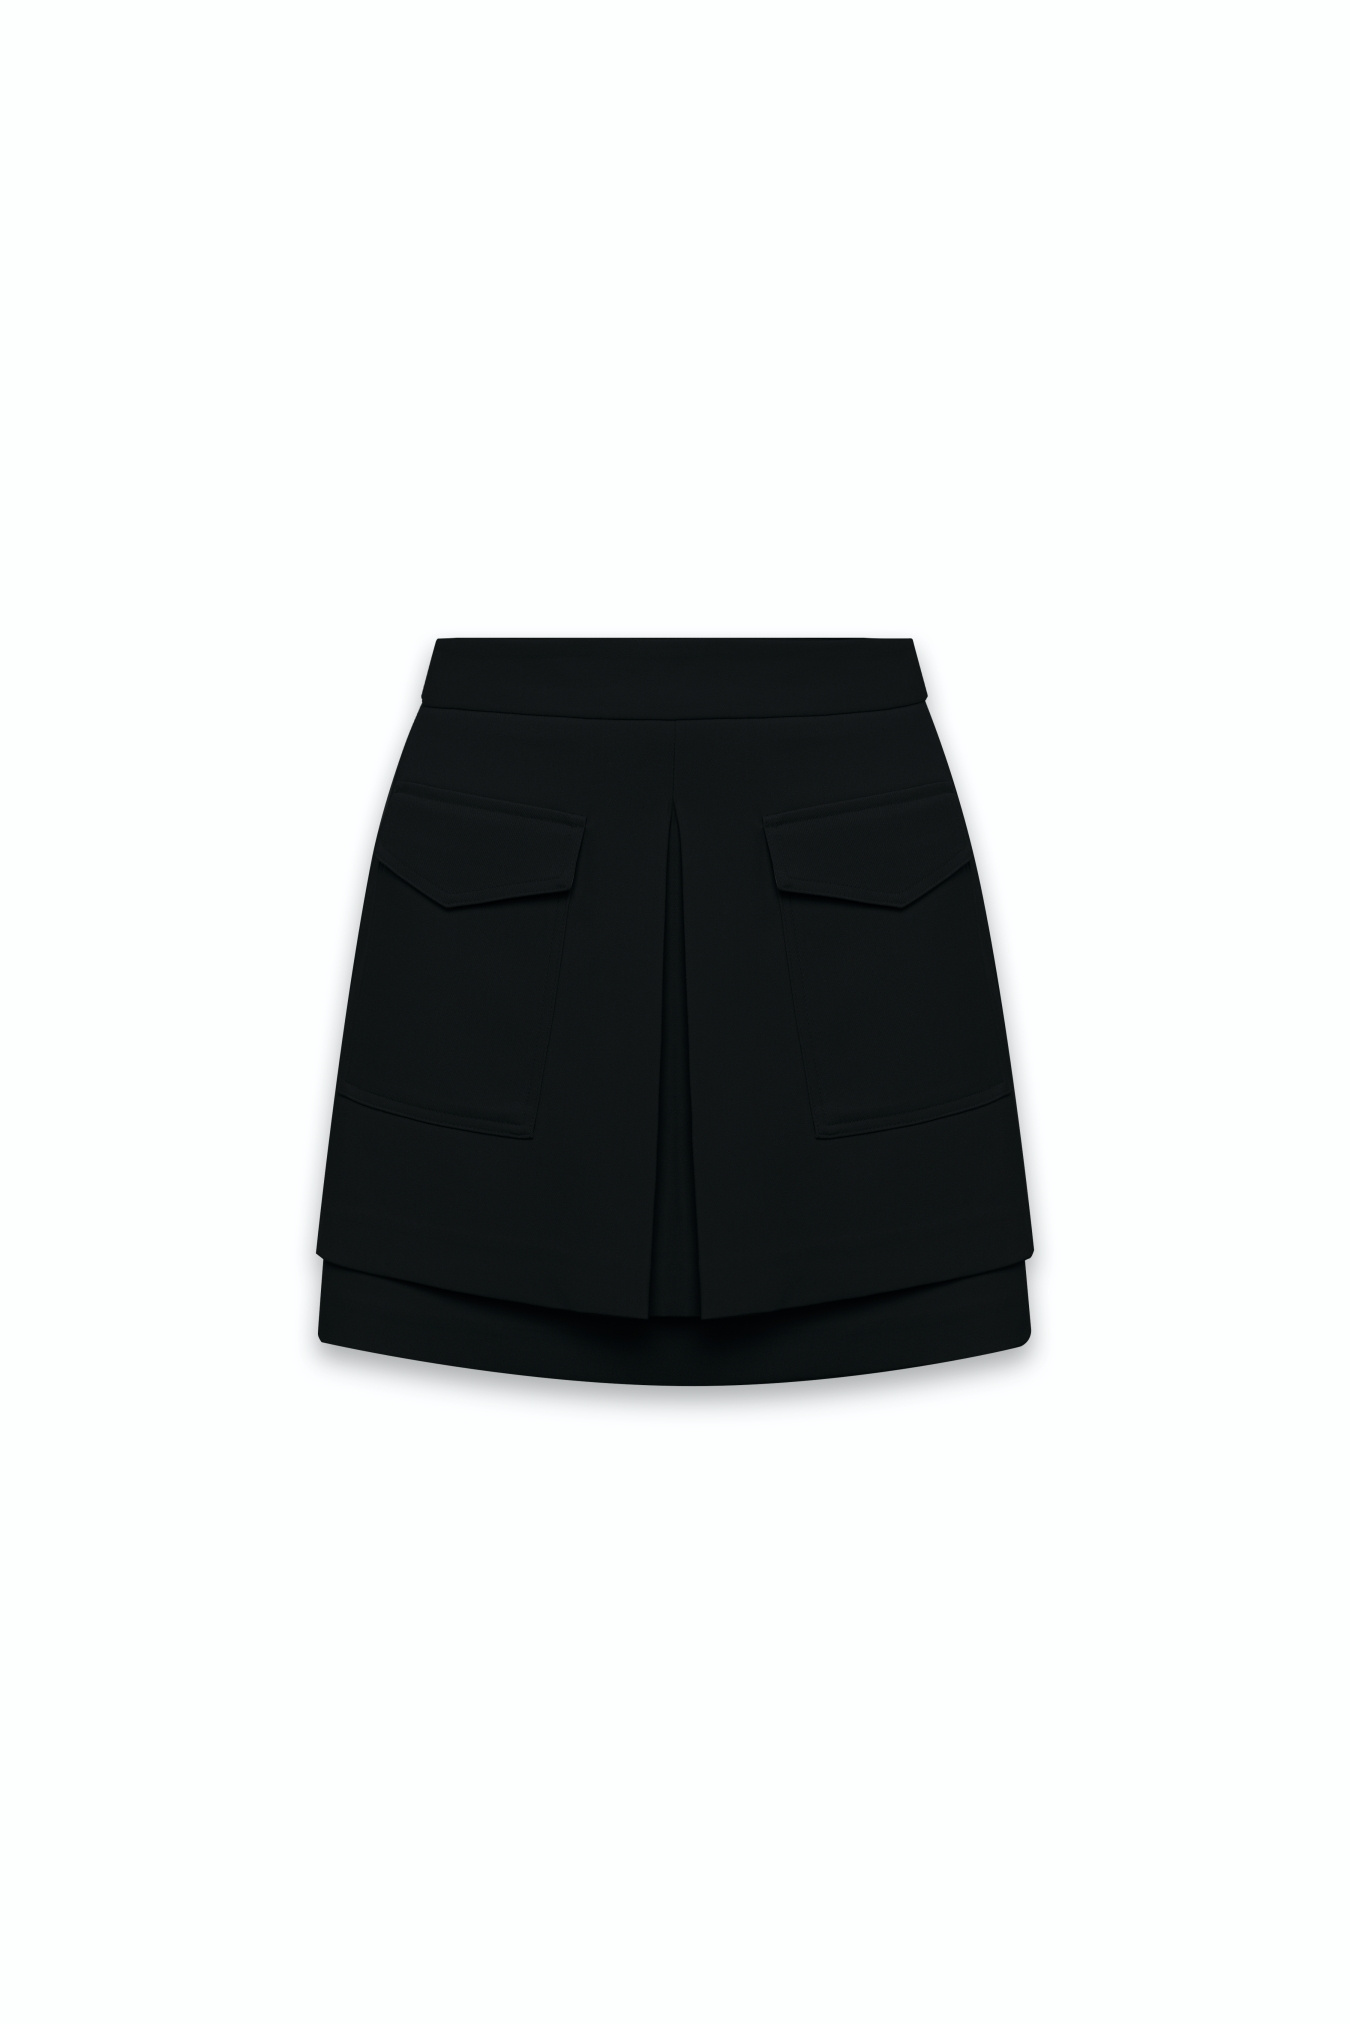 Chân váy xếp ly xòe chữ a màu đen CV06-07 | Thời trang công sở K&K Fashion